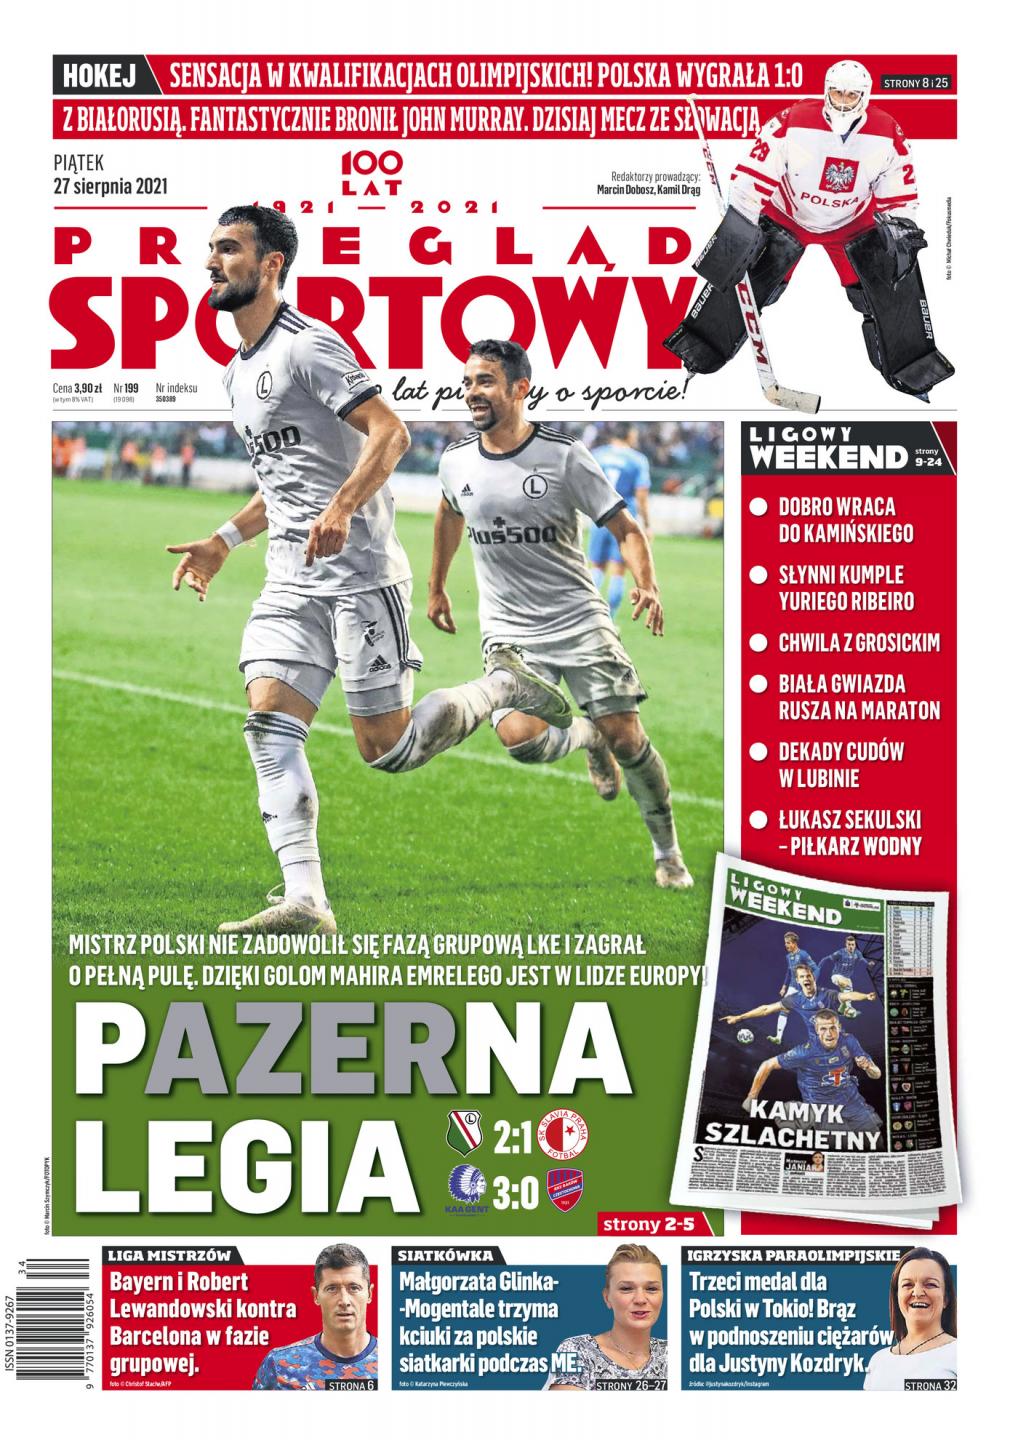 Okładka Przegląd Sportowy po meczu Legia Warszawa - Slavia Praga 2:1 (26.08.2021).